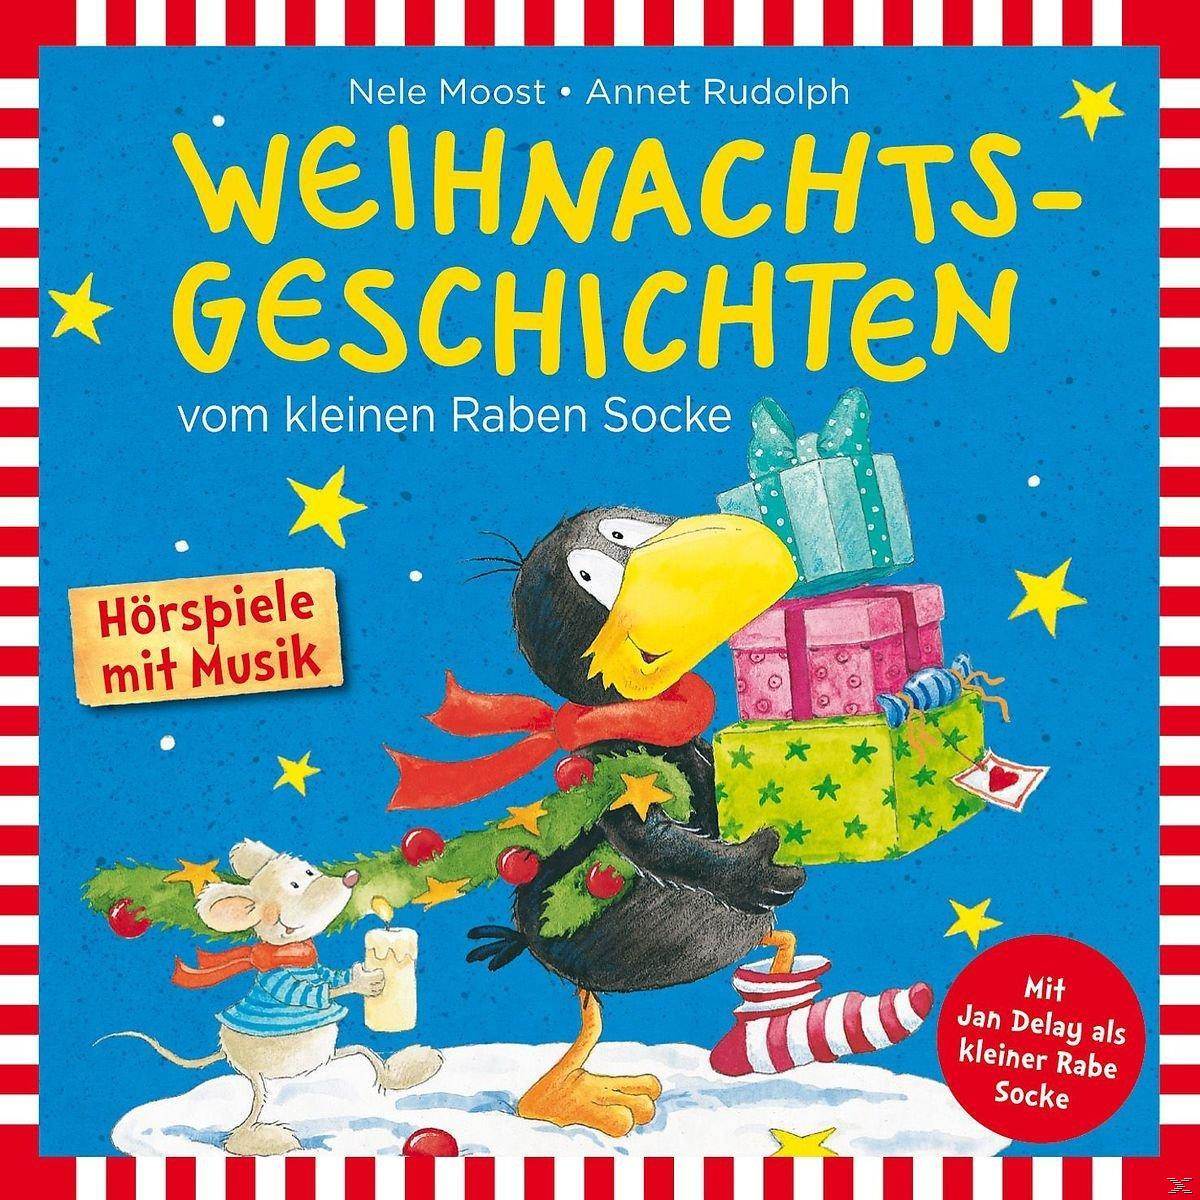 Rabe Socke - Socke Raben Weihnachtsgeschichten Vom Kleinen (CD) 